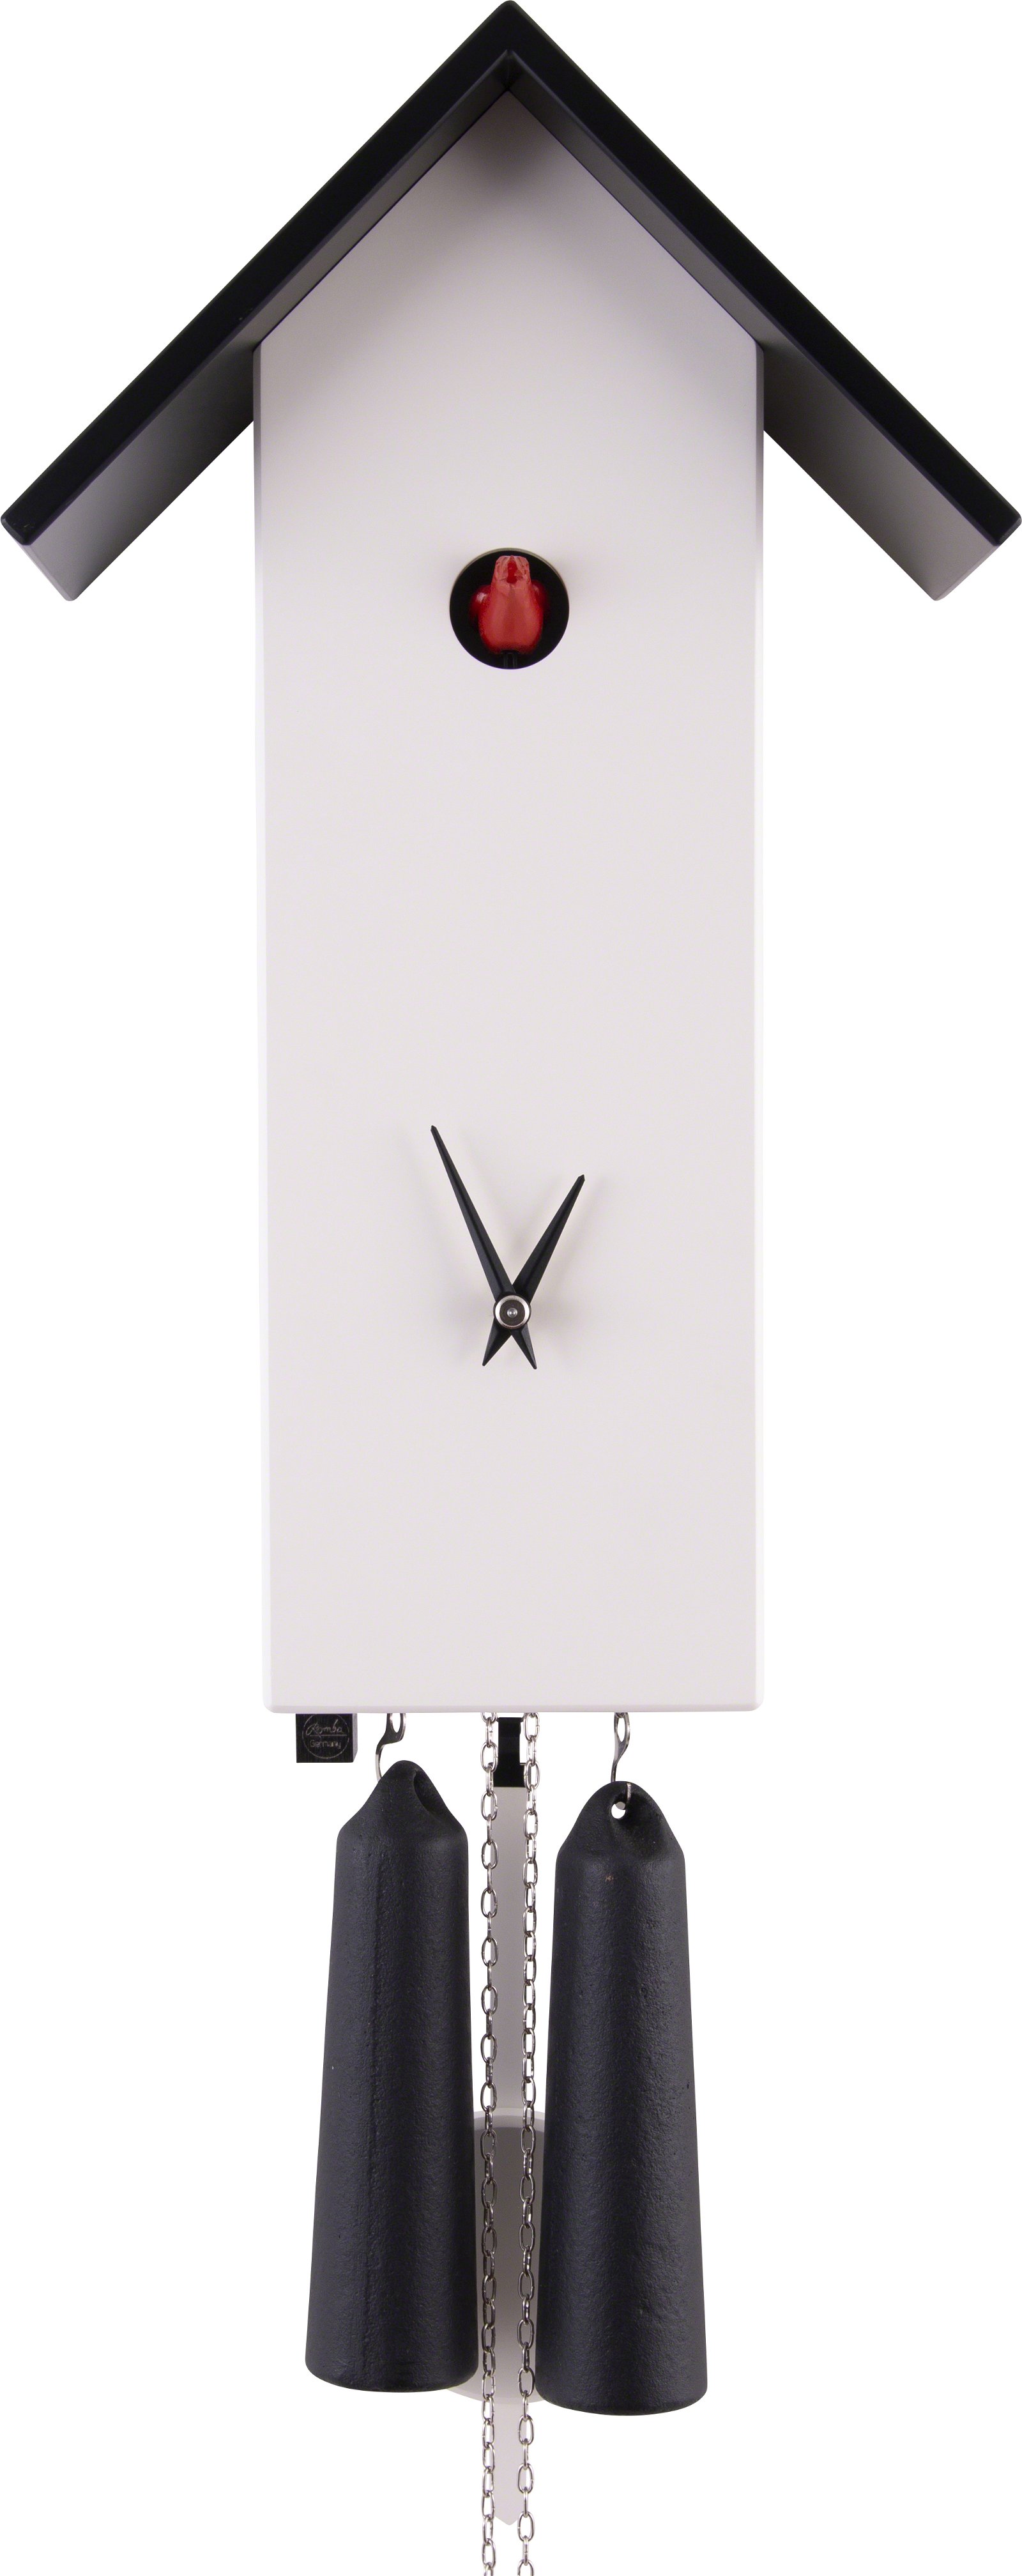 Moderne Kuckucksuhr 8-Tages-Uhrwerk  41cm von Rombach & Haas